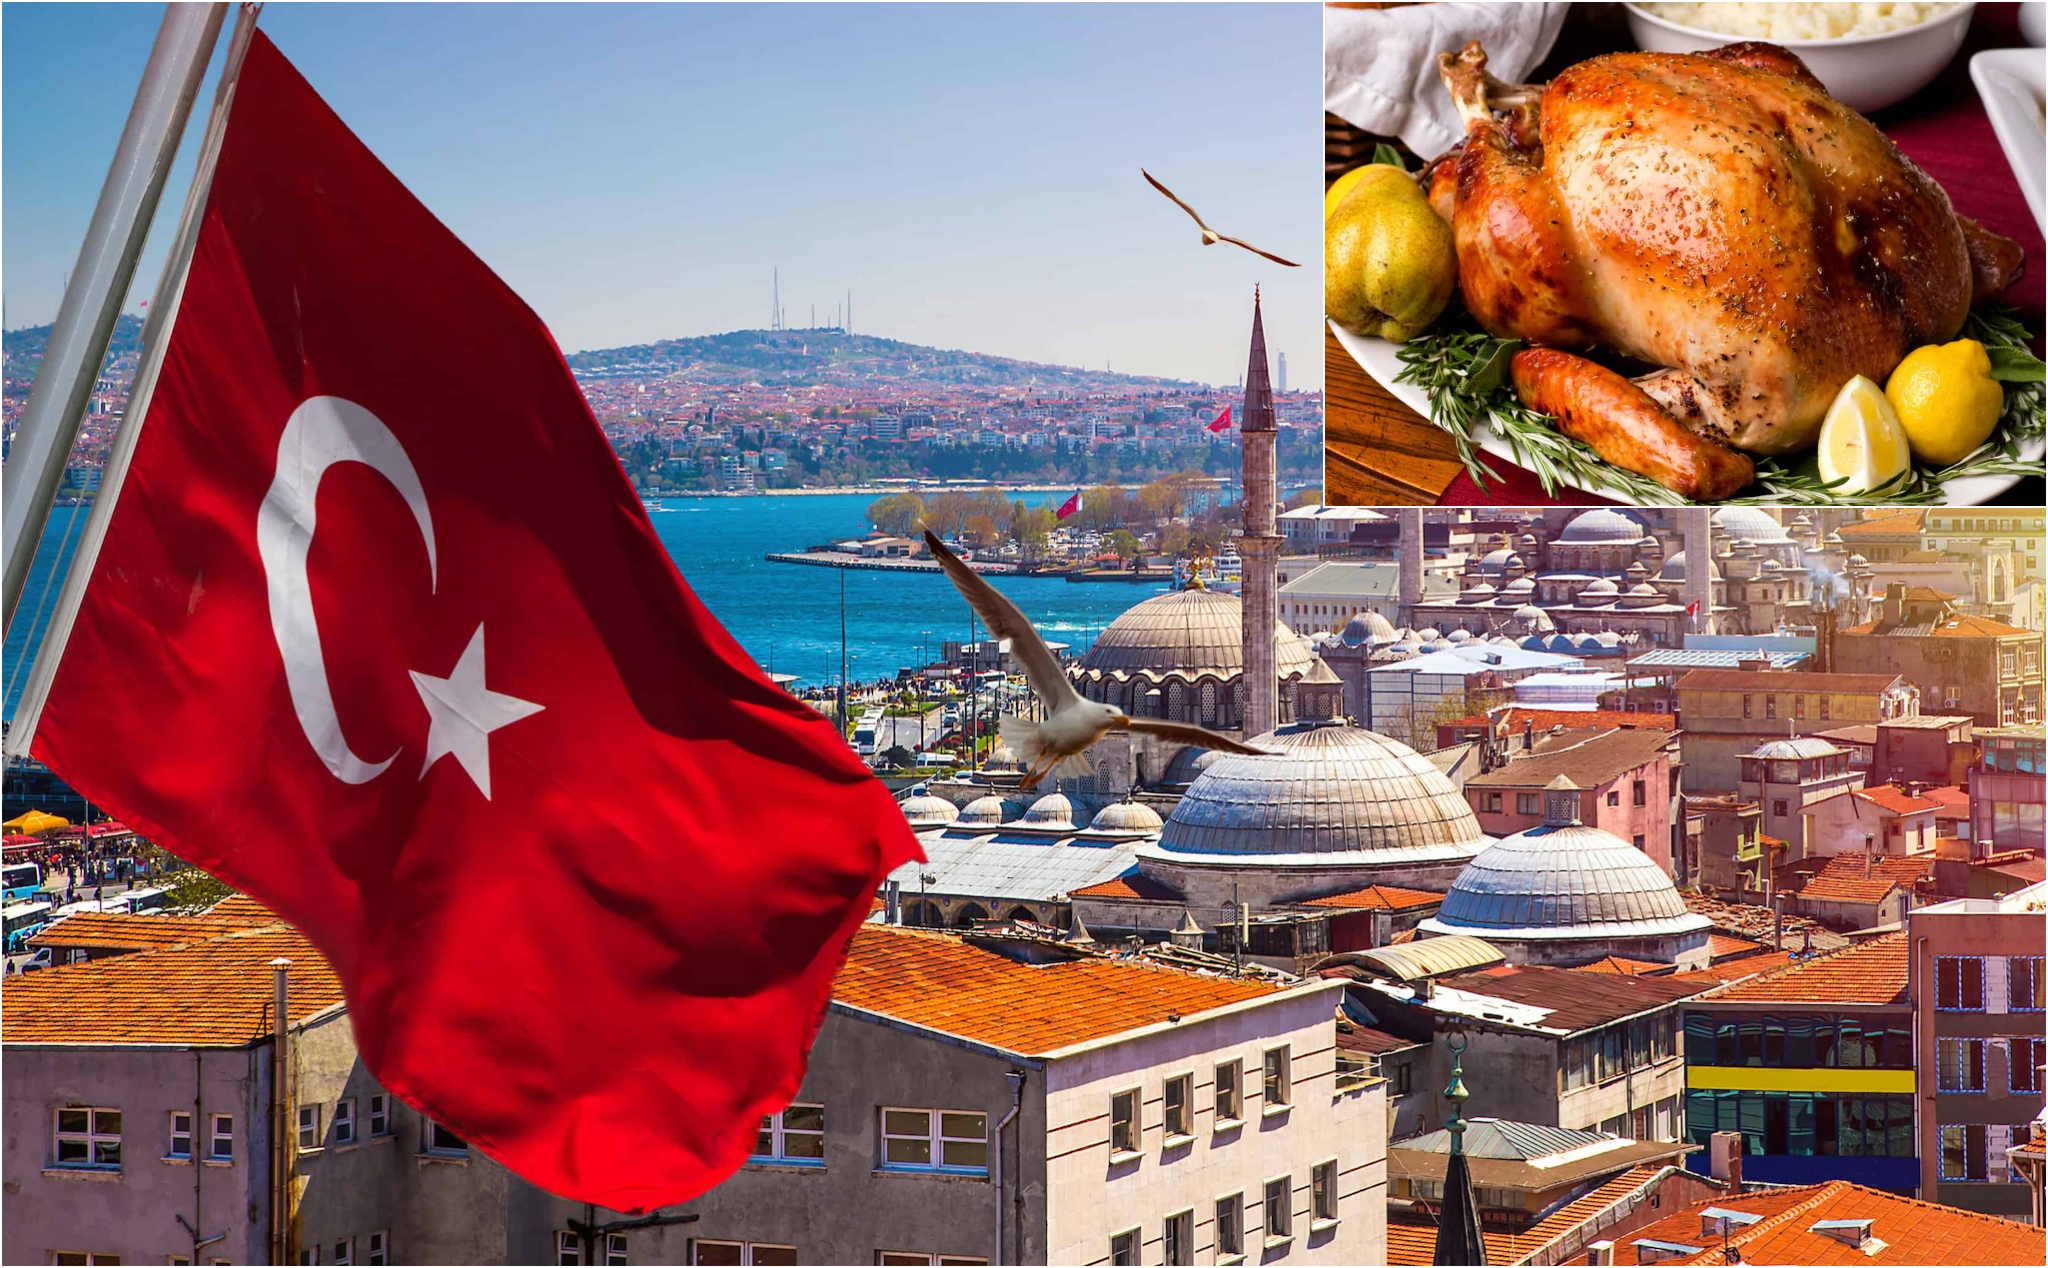 Thổ Nhĩ Kỳ đổi tên quốc tế từ Turkey thành Türkiye, để tránh trùng với tên gà Tây